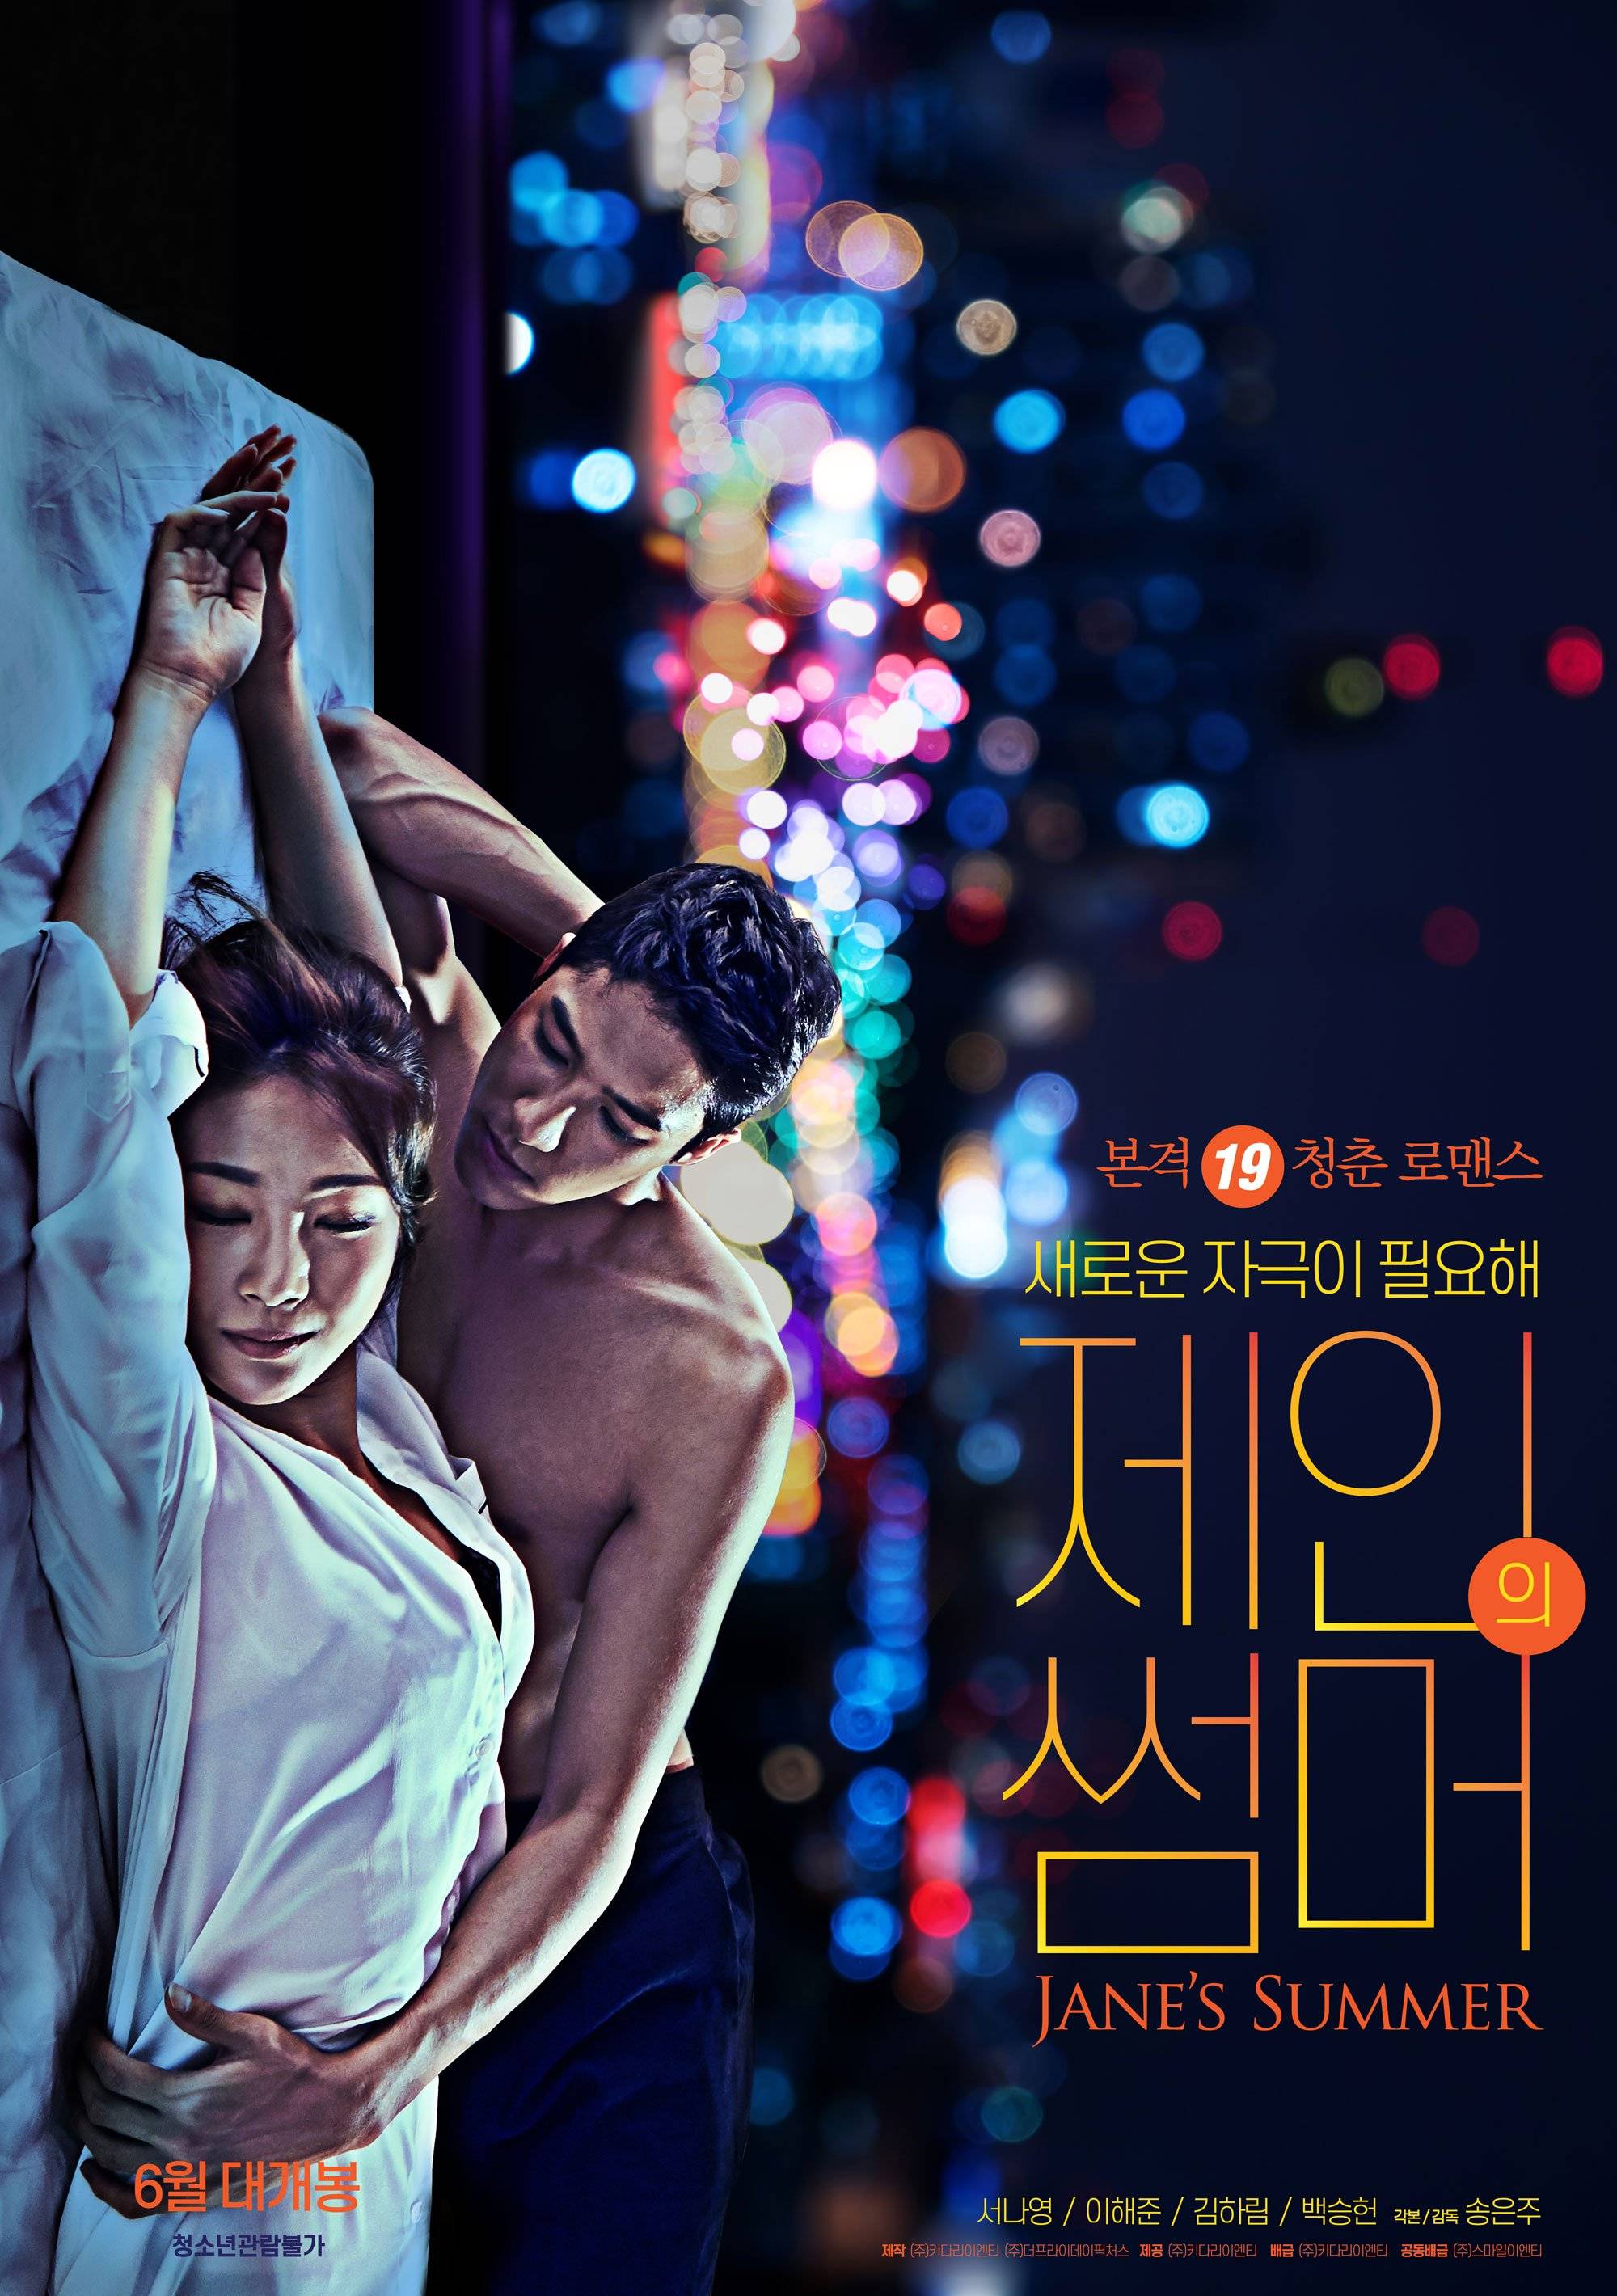 [18+] Jane’s Summer (2020) [Full Movie] Watch HD Online Free | YesHD.Net